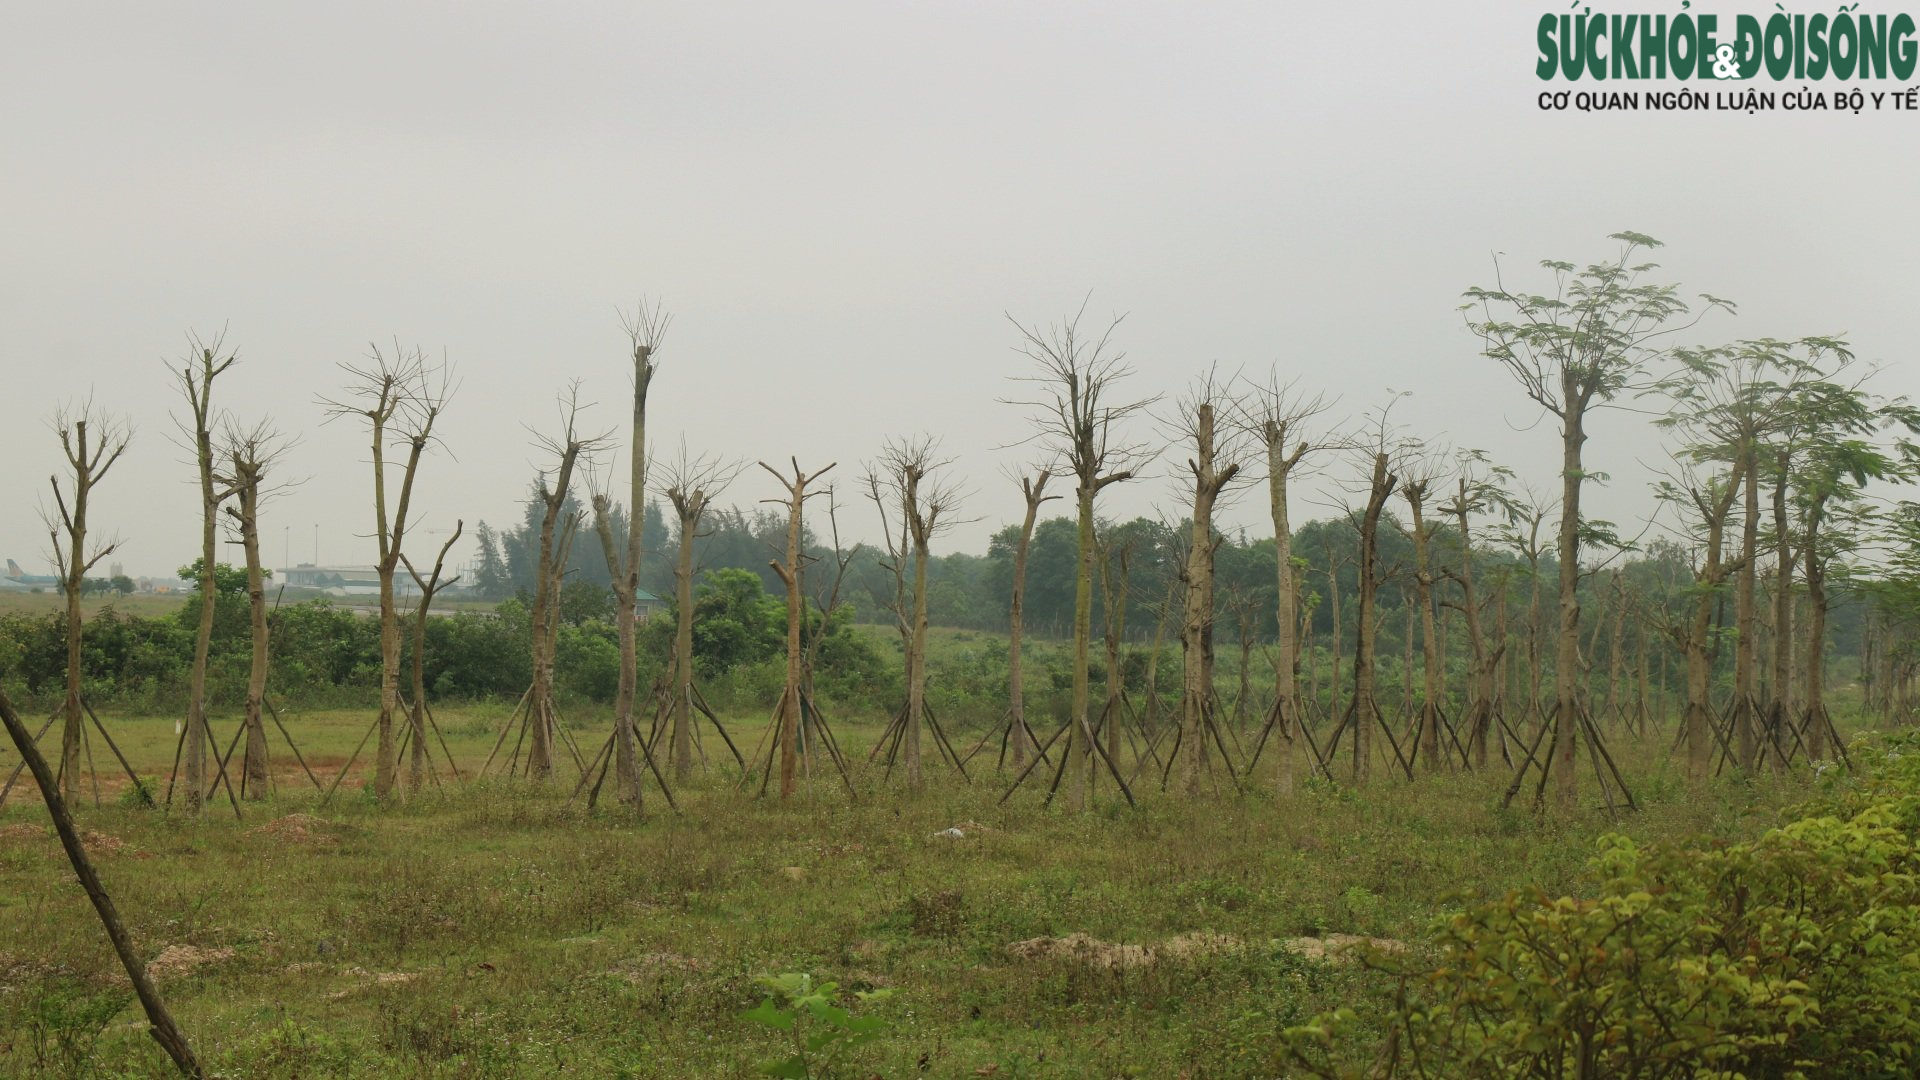 Thừa Thiên Huế: Hàng loạt cây xanh tạo điểm nhấn cho cửa ngõ phía Nam tróc vỏ, chết khô - Ảnh 4.